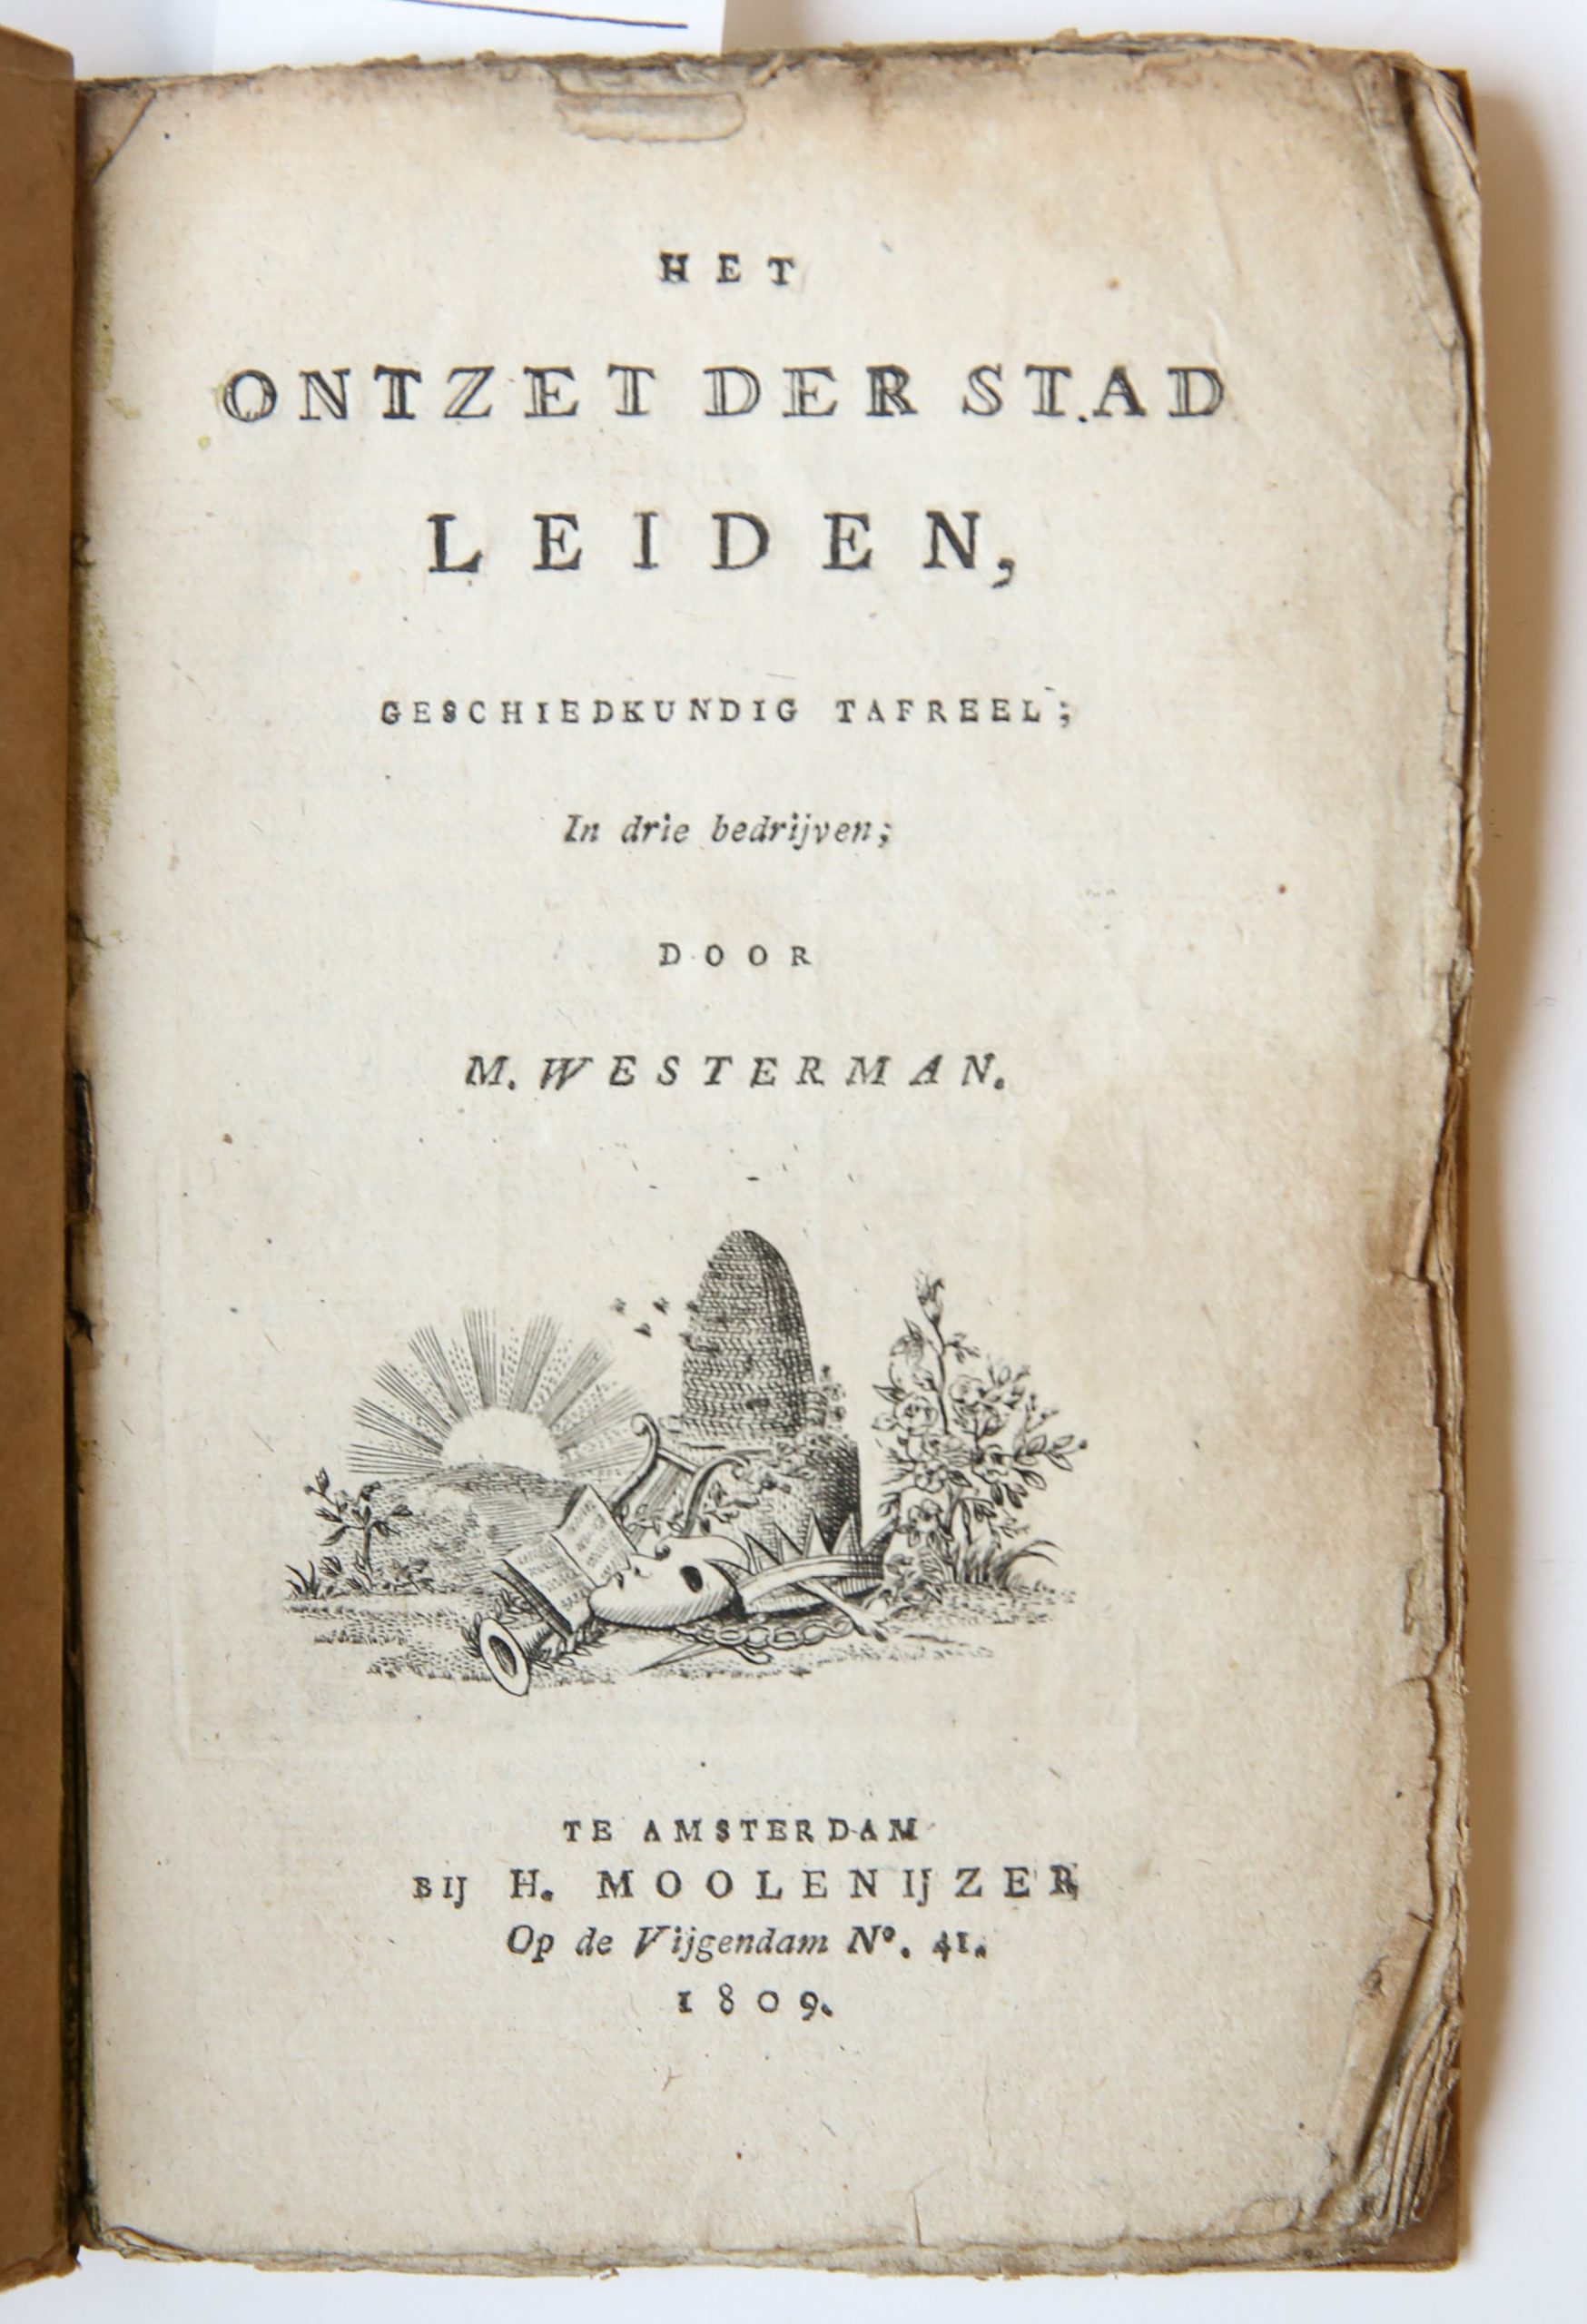 Het ontzet der stad Leiden. Geschiedkundig tafreel in drie bedrijven. Amsterdam, H. Moolenijzer, 1809.